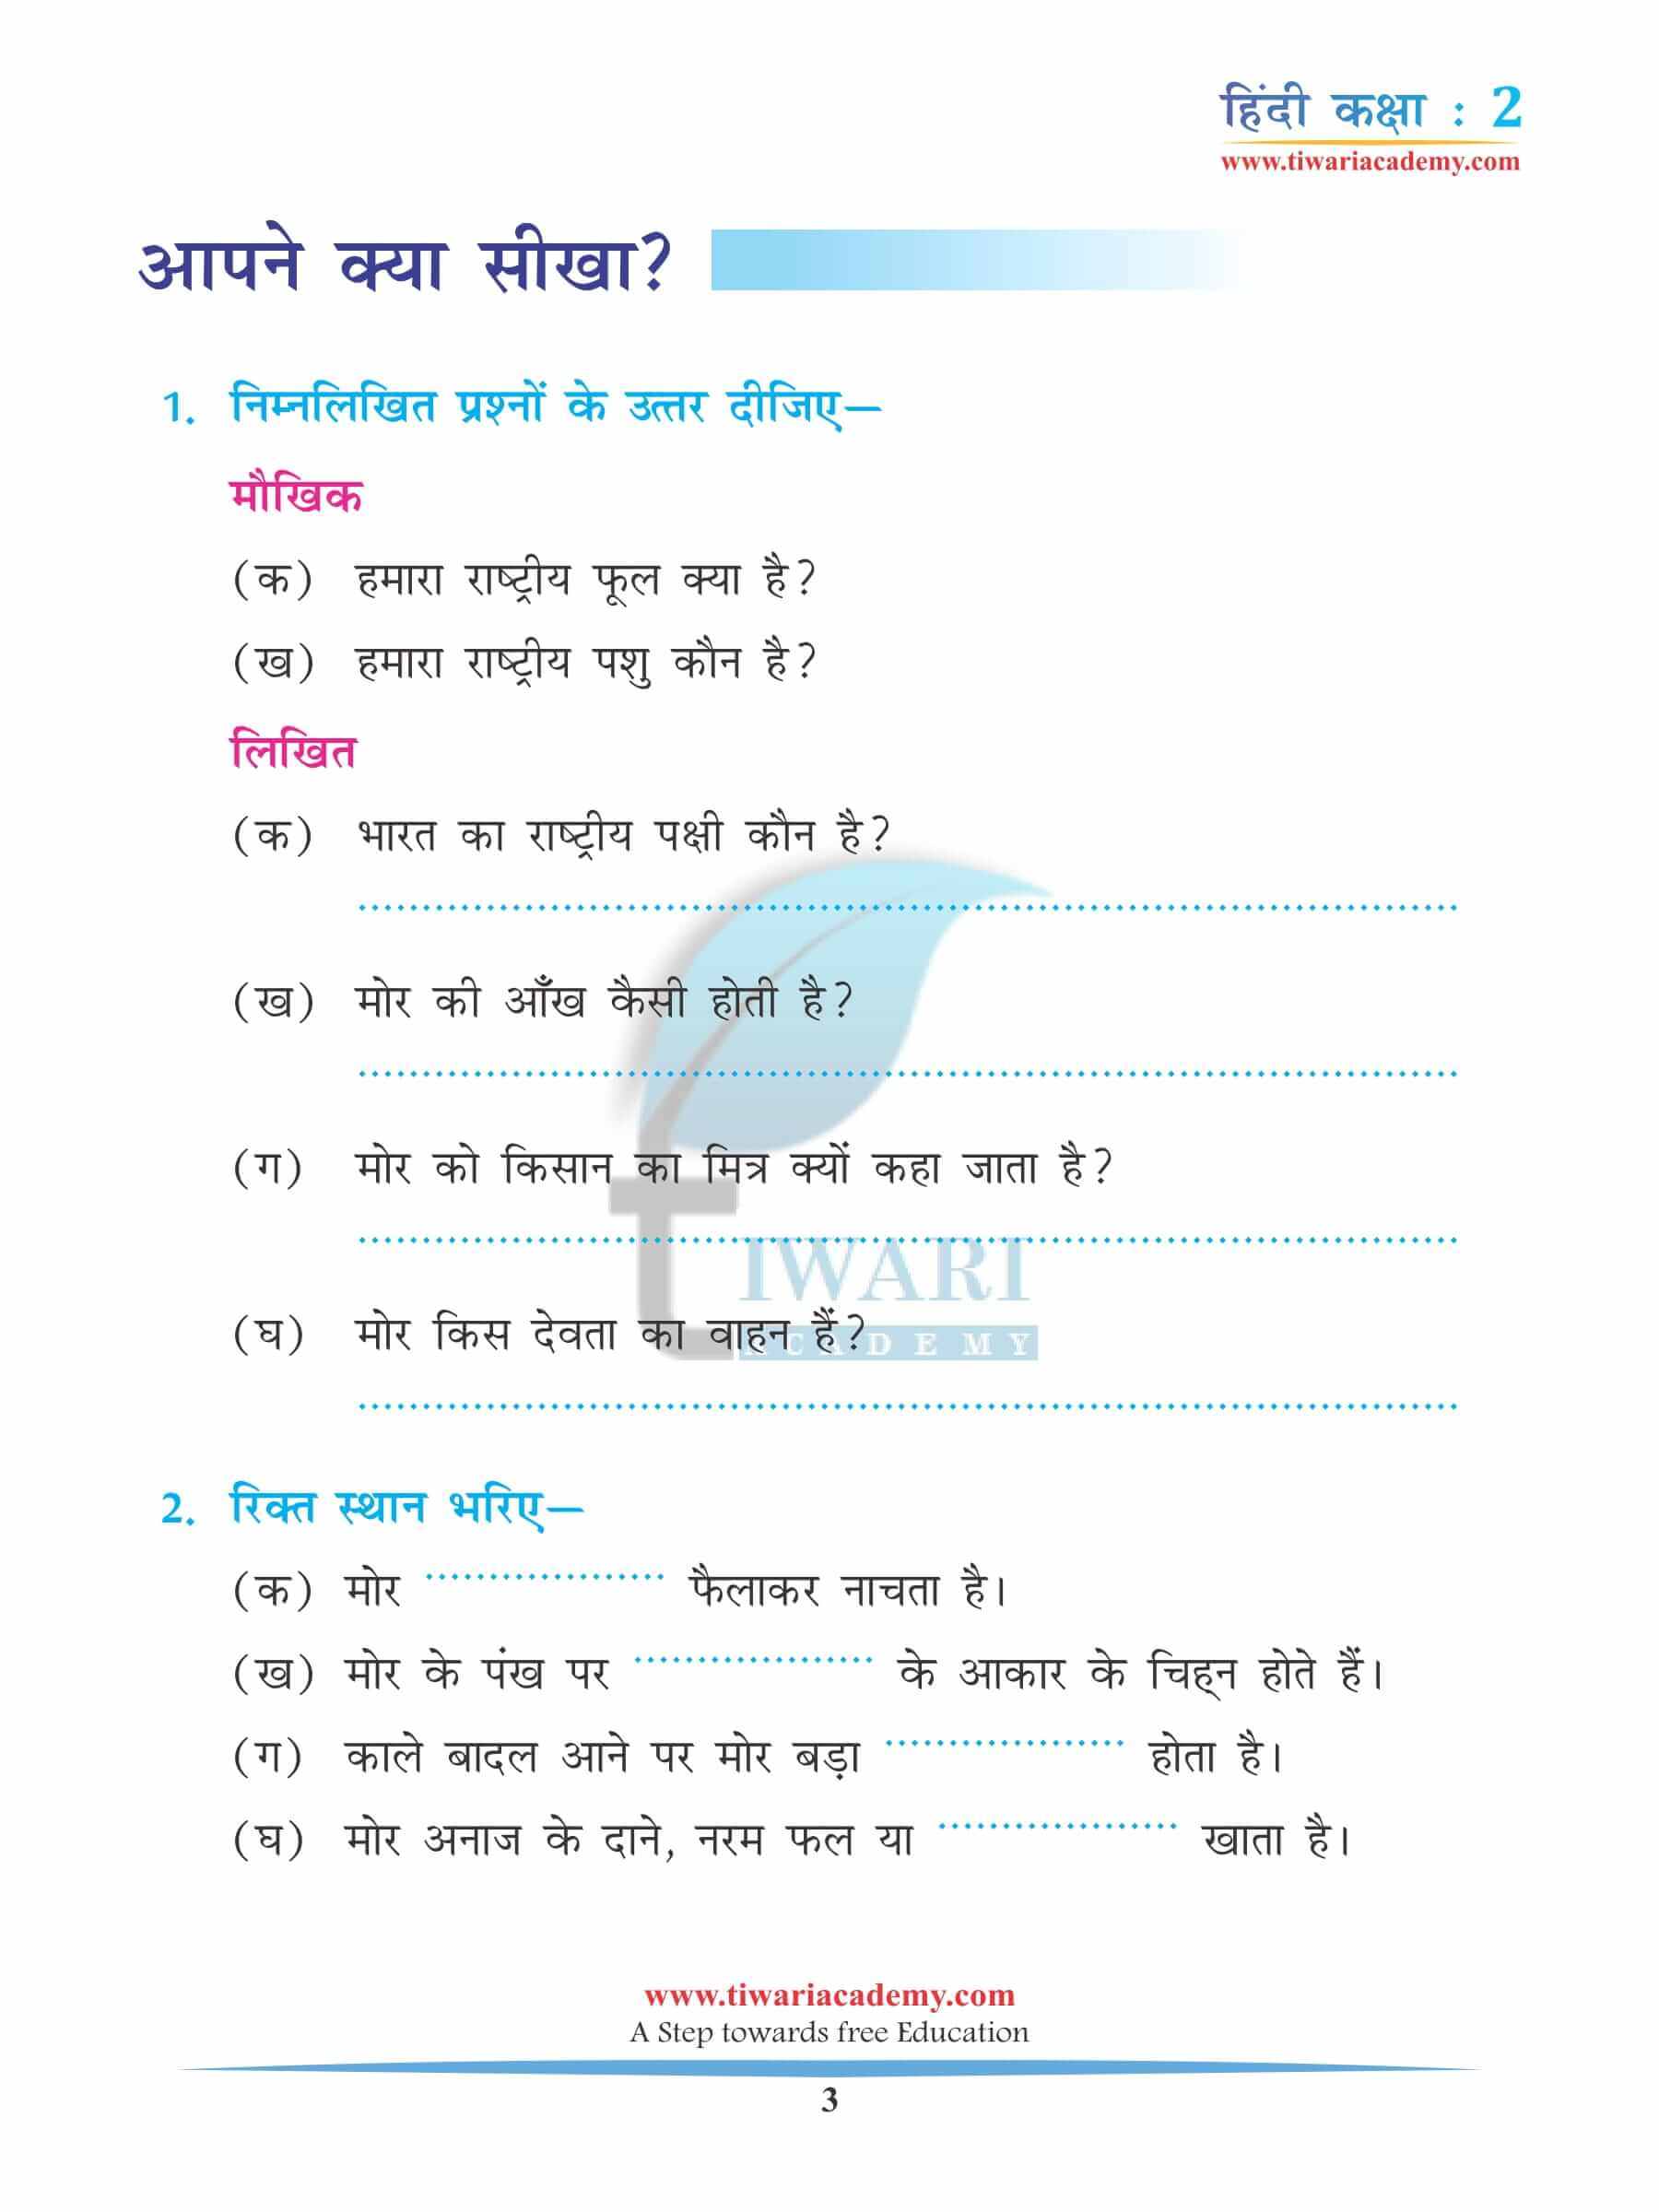 कक्षा 2 हिंदी अध्याय 3 अतिरिक्त प्रश्न उत्तर